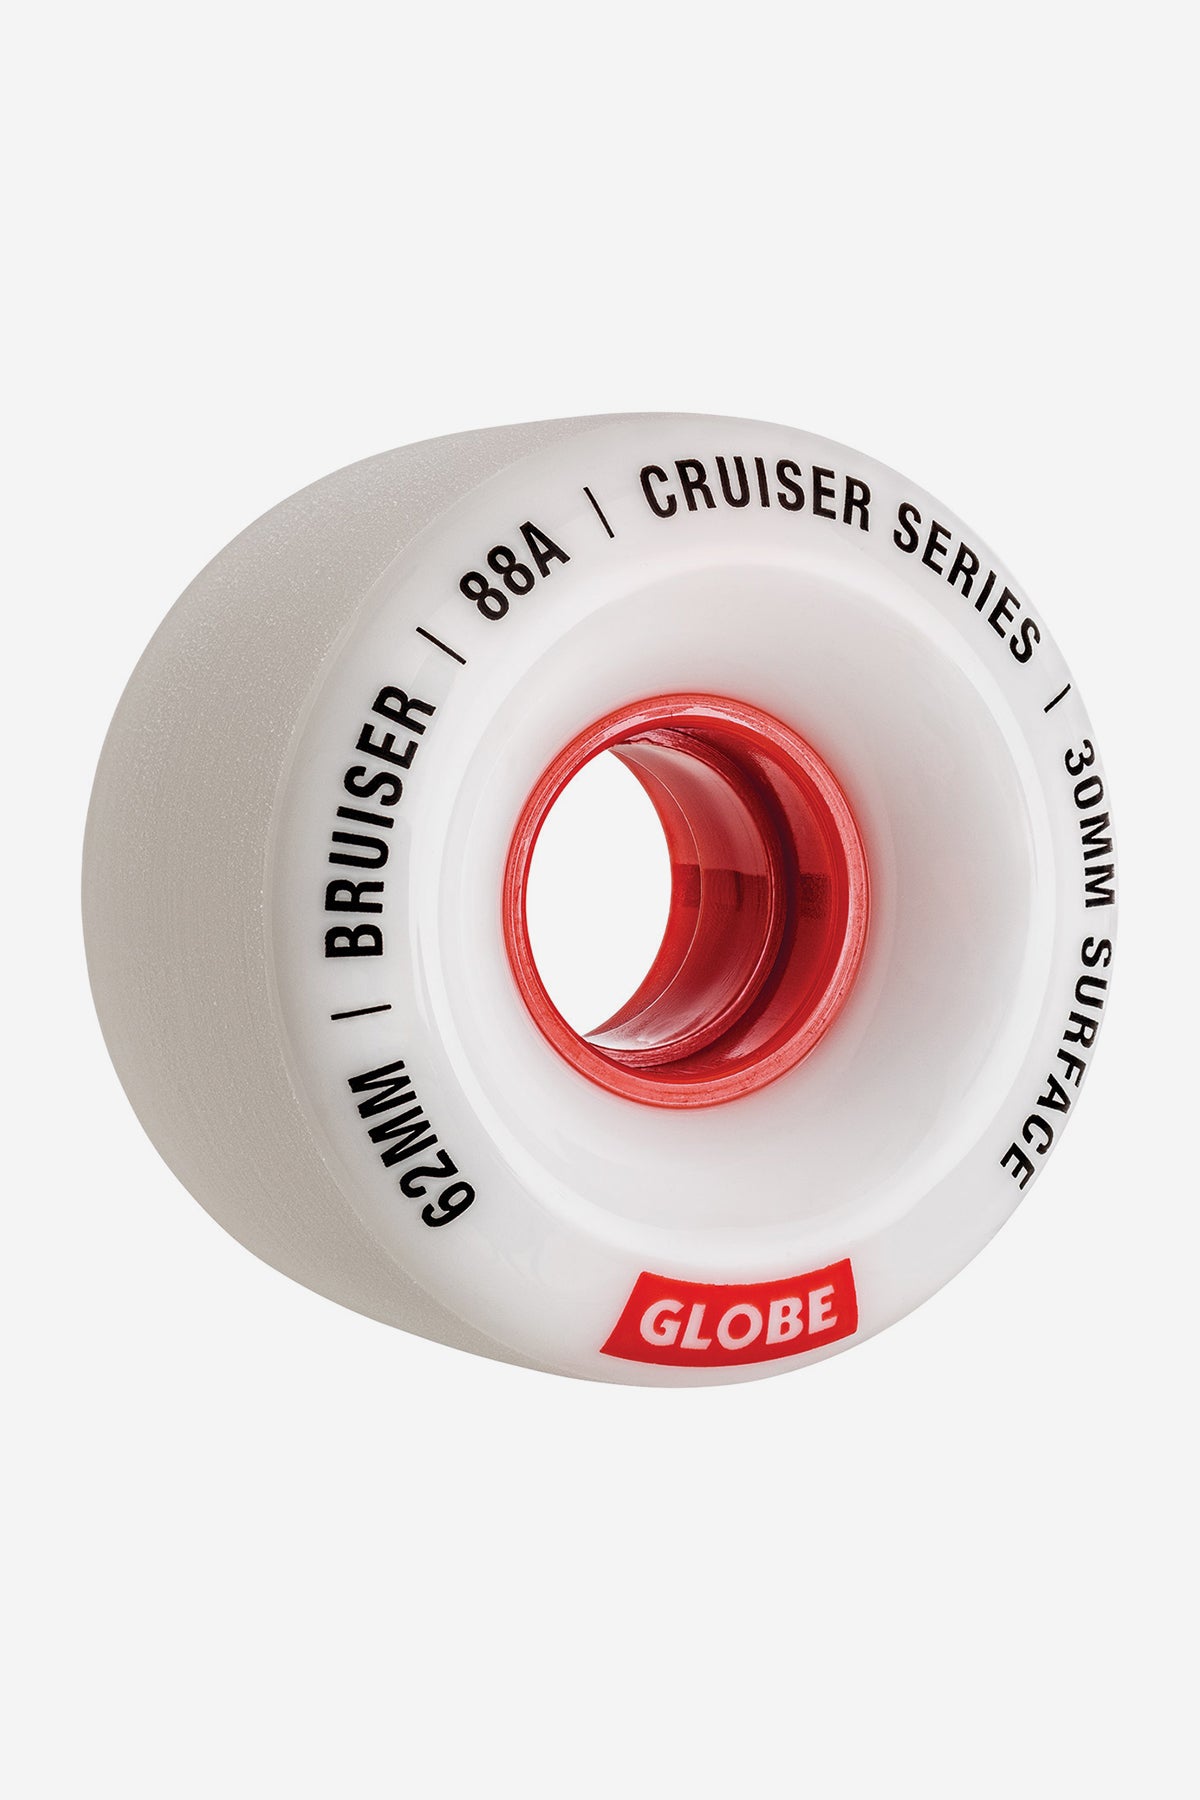 detail of Bruiser Cruiser Wheel 62MM - white/red